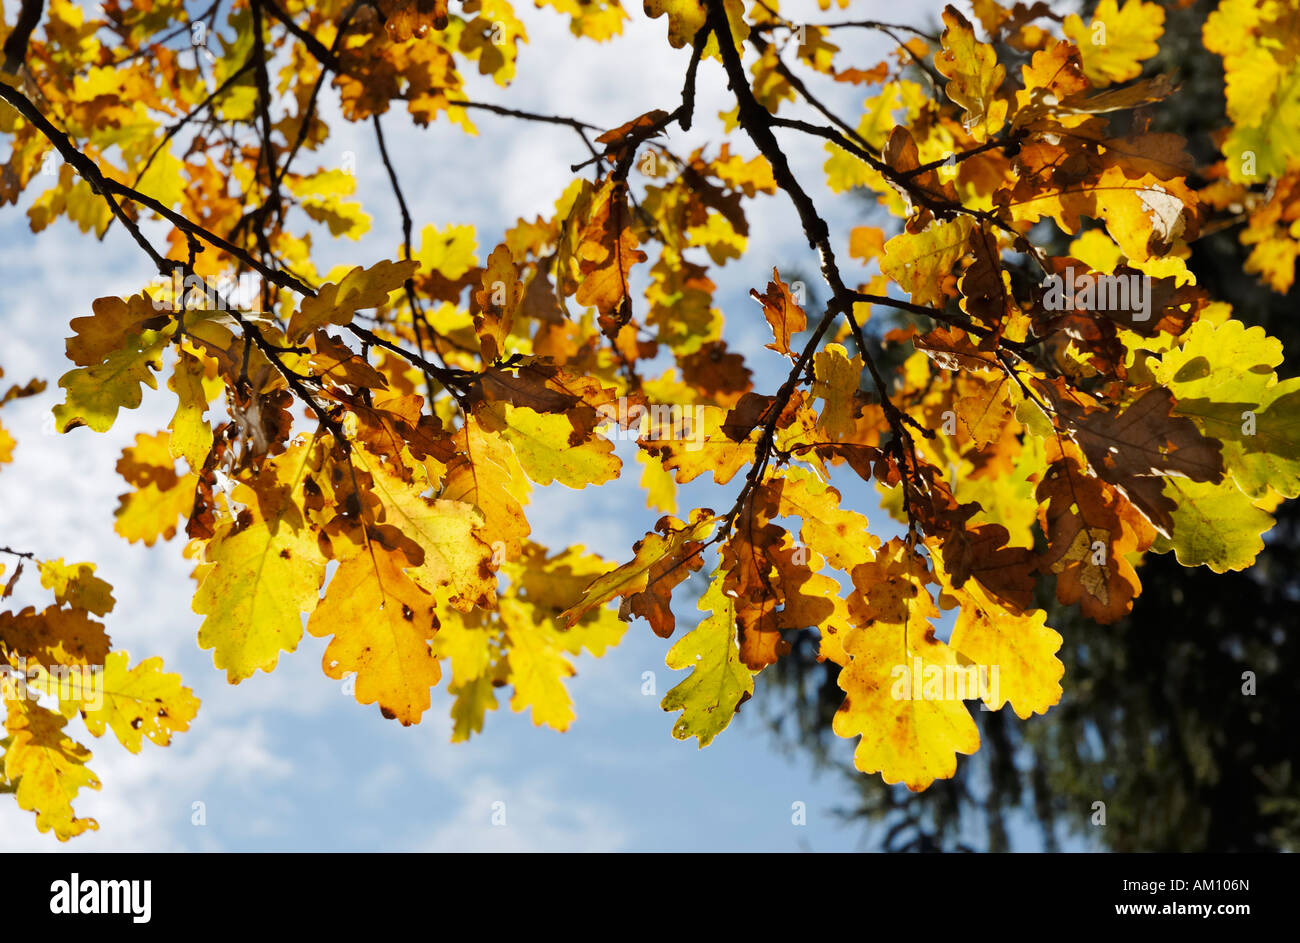 Colores otoñales hojas de roble, Quercus robur fagaceae Foto de stock